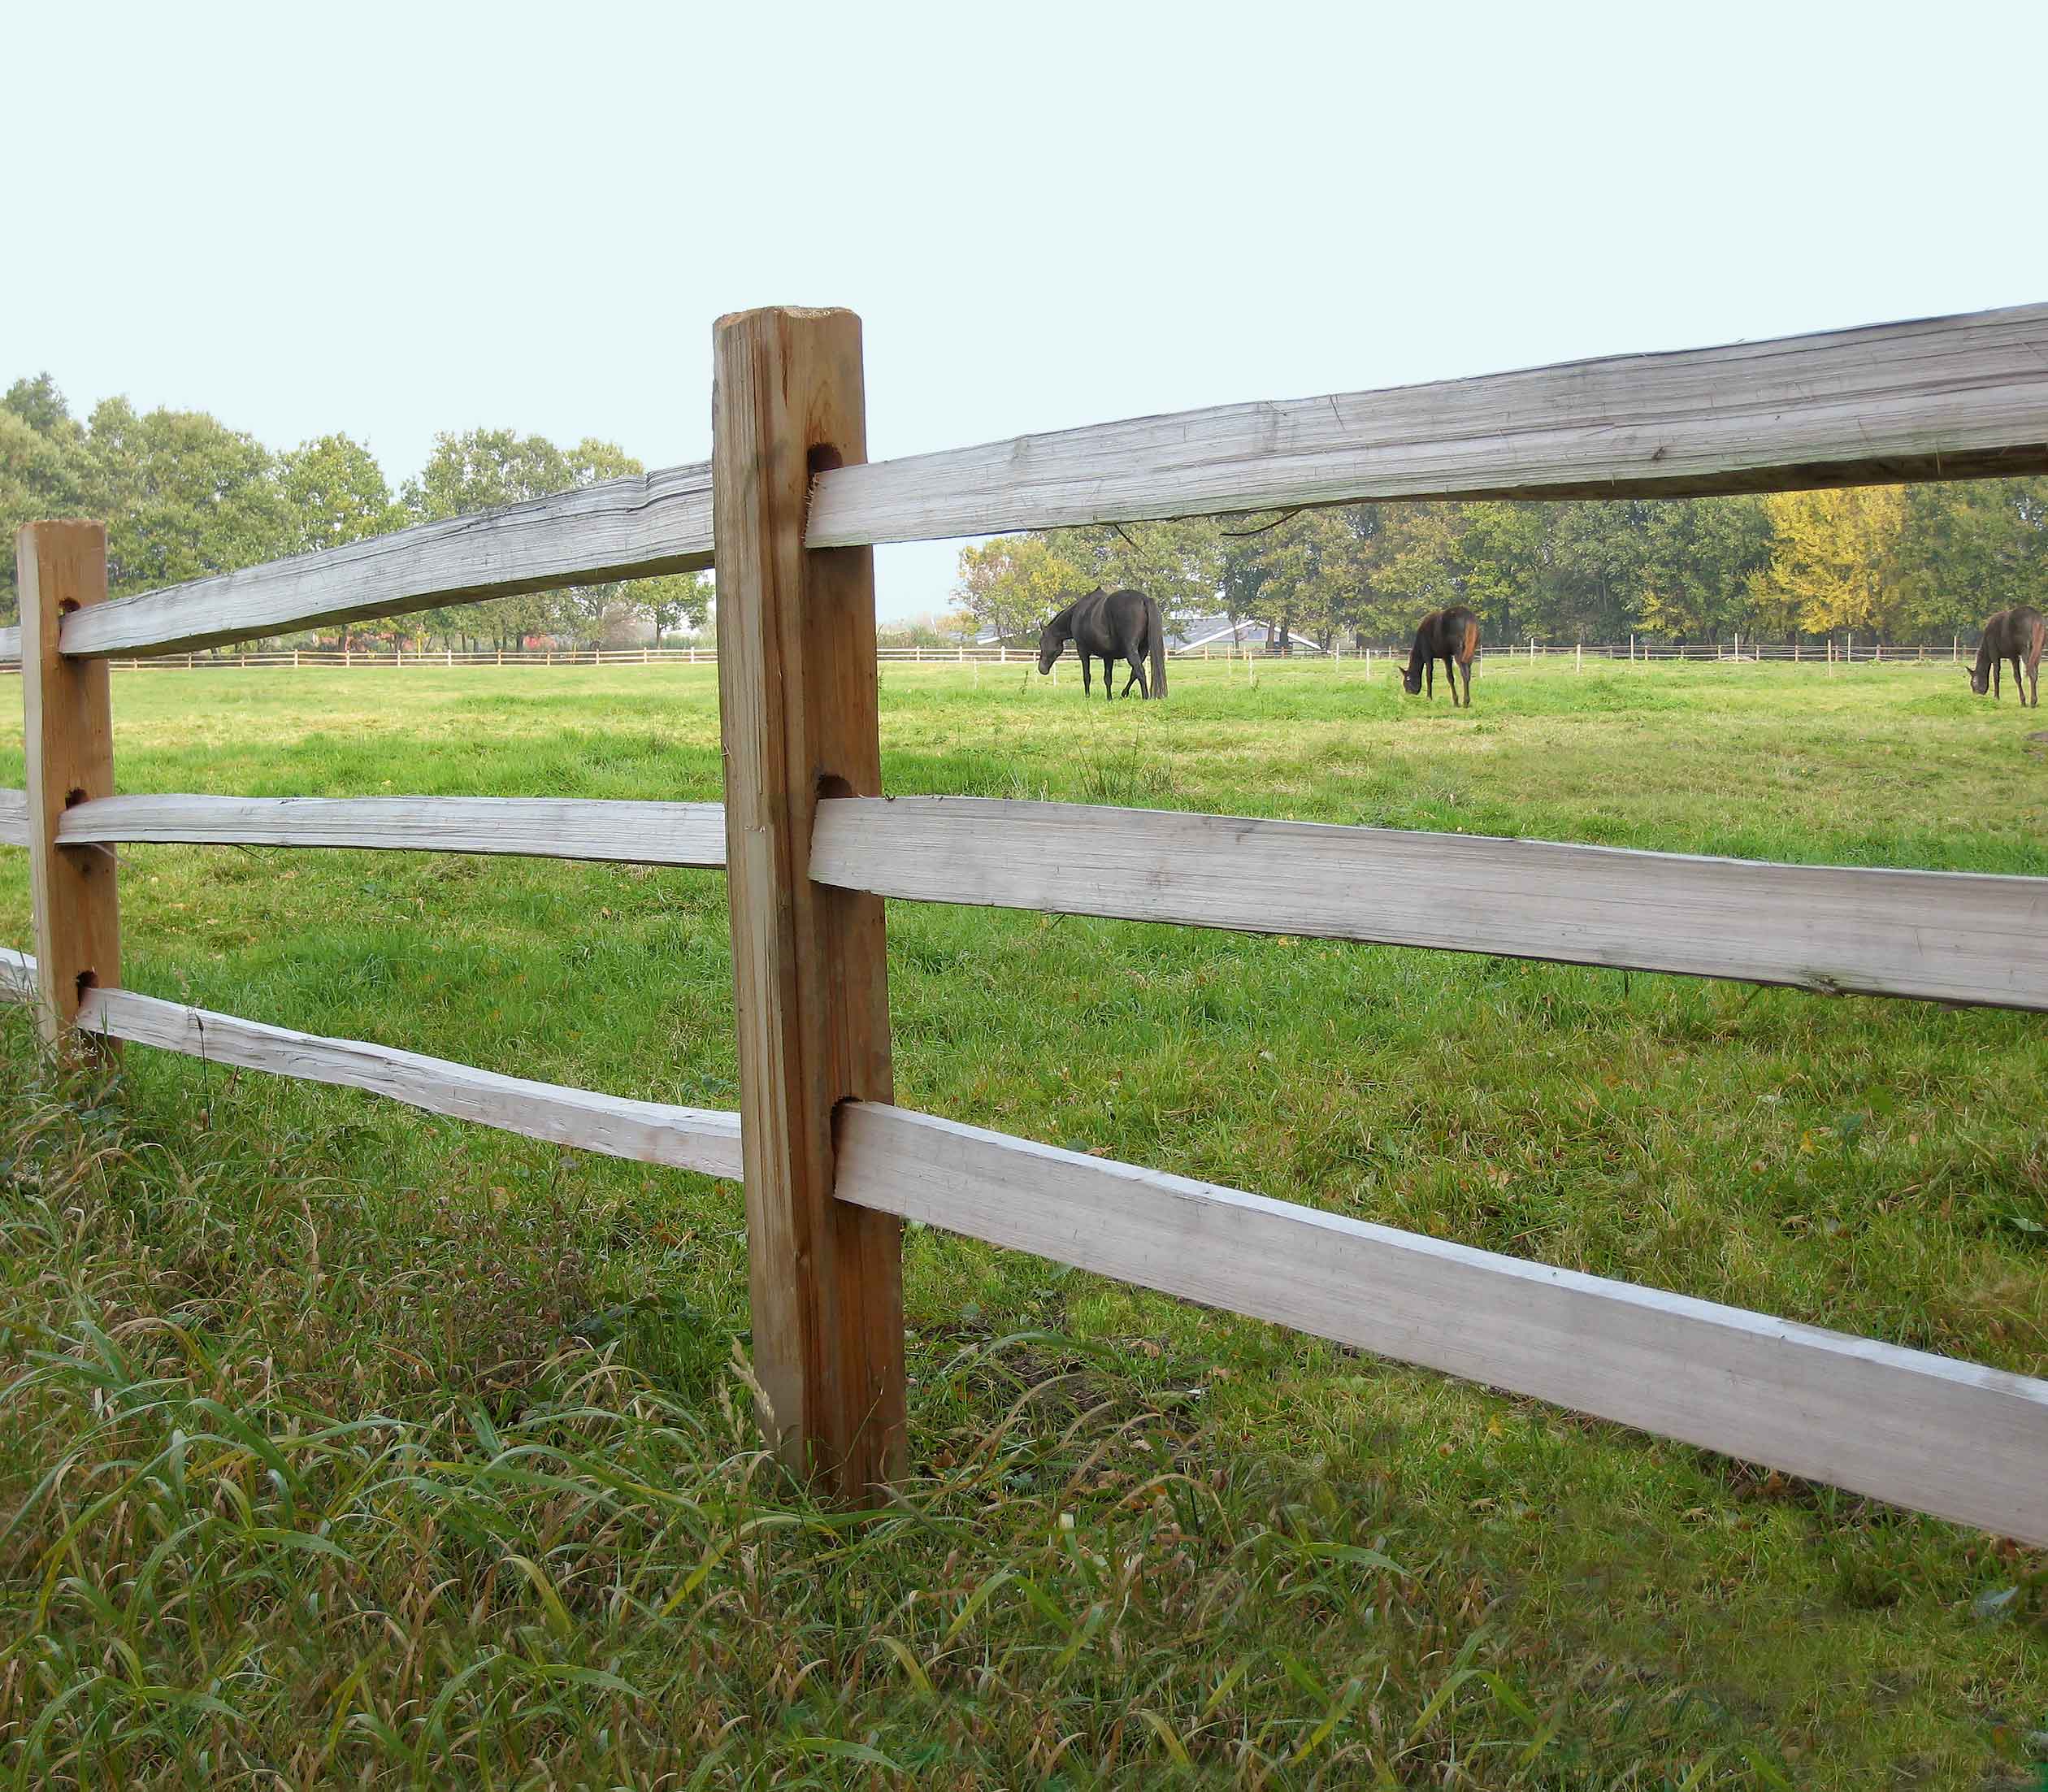 Zwischen den Latten eines rustikalen Pferdezauns sind drei Pferde zu sehen, die auf einer Koppel grasen.